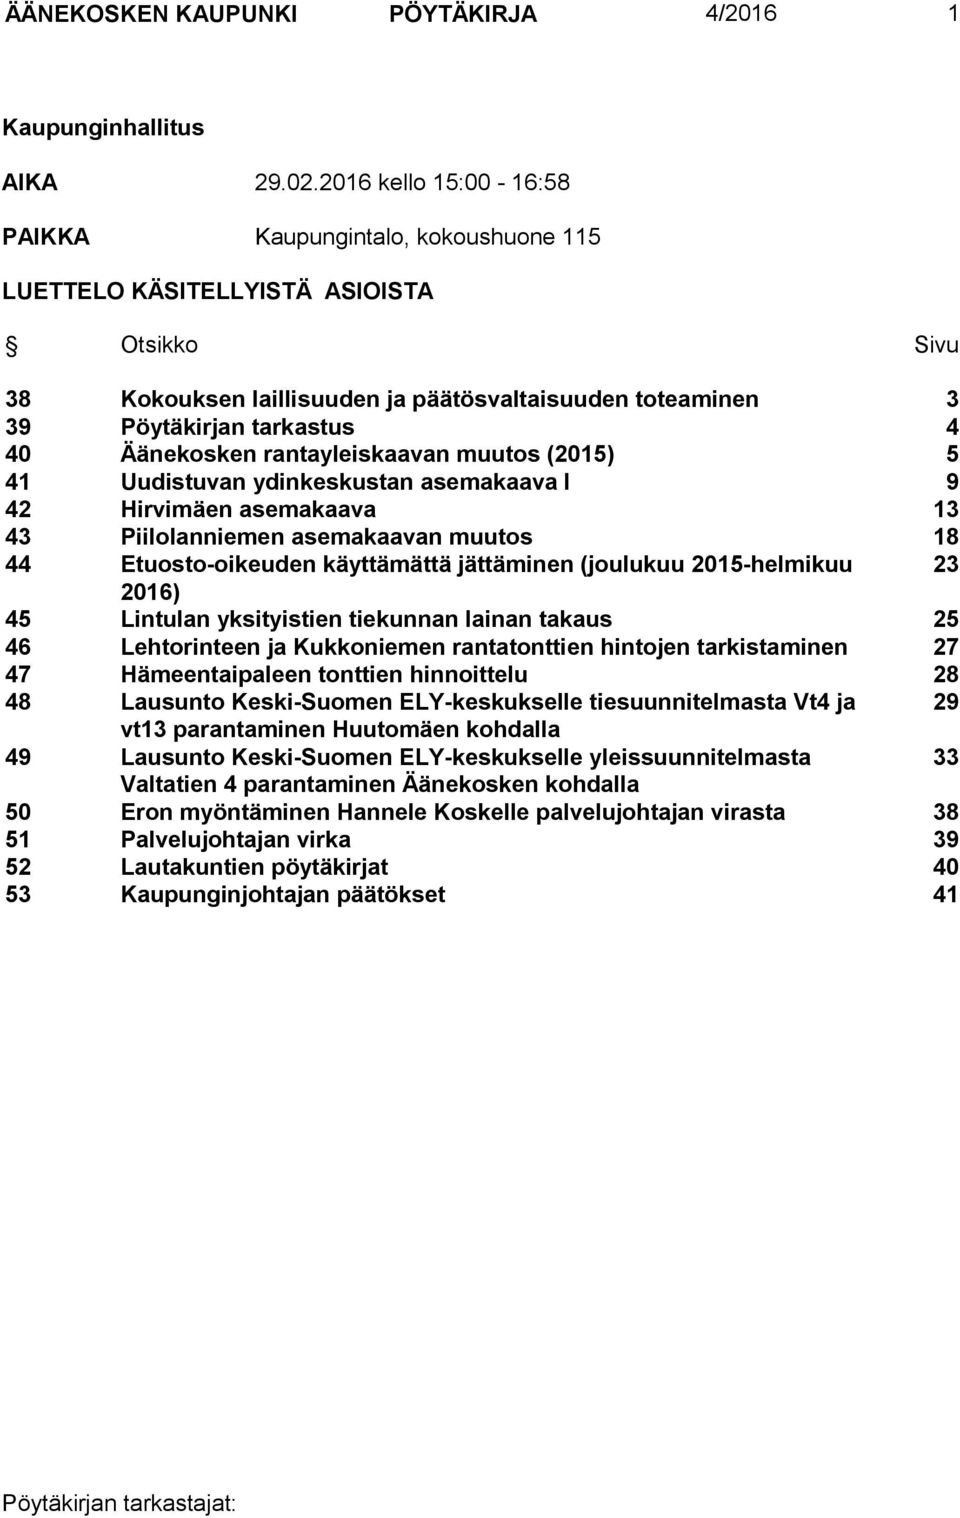 Äänekosken rantayleiskaavan muutos (2015) 5 41 Uudistuvan ydinkeskustan asemakaava I 9 42 Hirvimäen asemakaava 13 43 Piilolanniemen asemakaavan muutos 18 44 Etuosto-oikeuden käyttämättä jättäminen